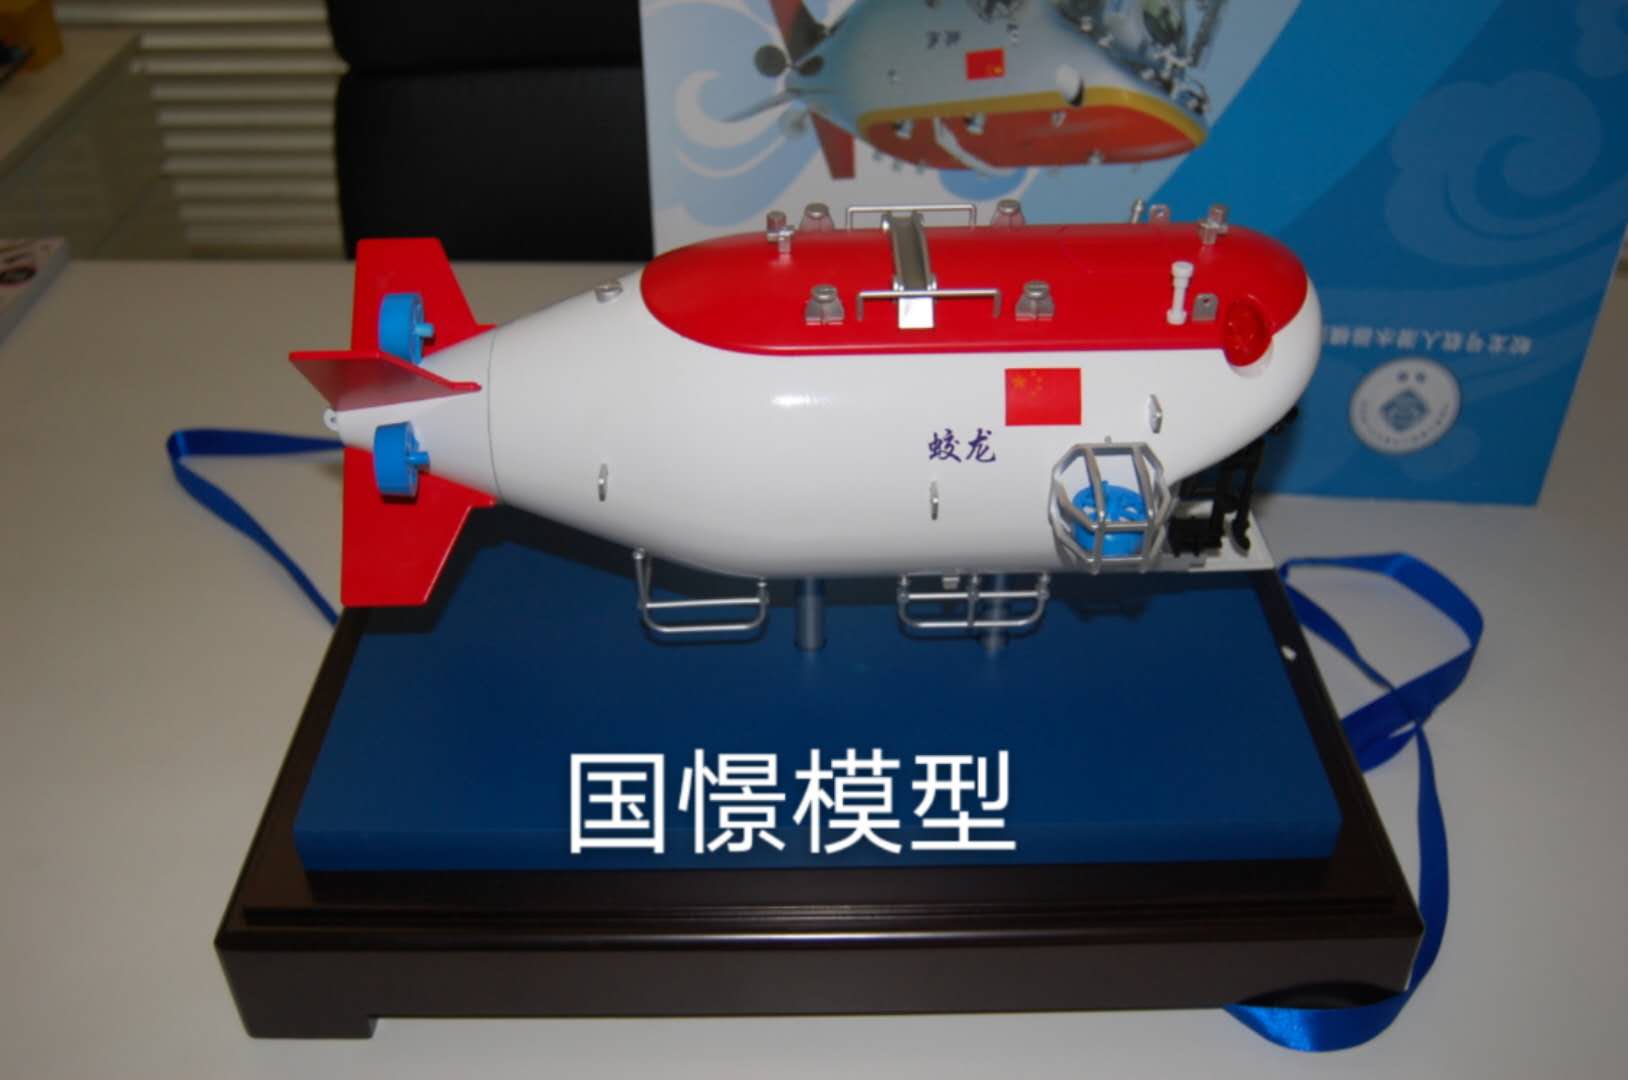 吉安县船舶模型